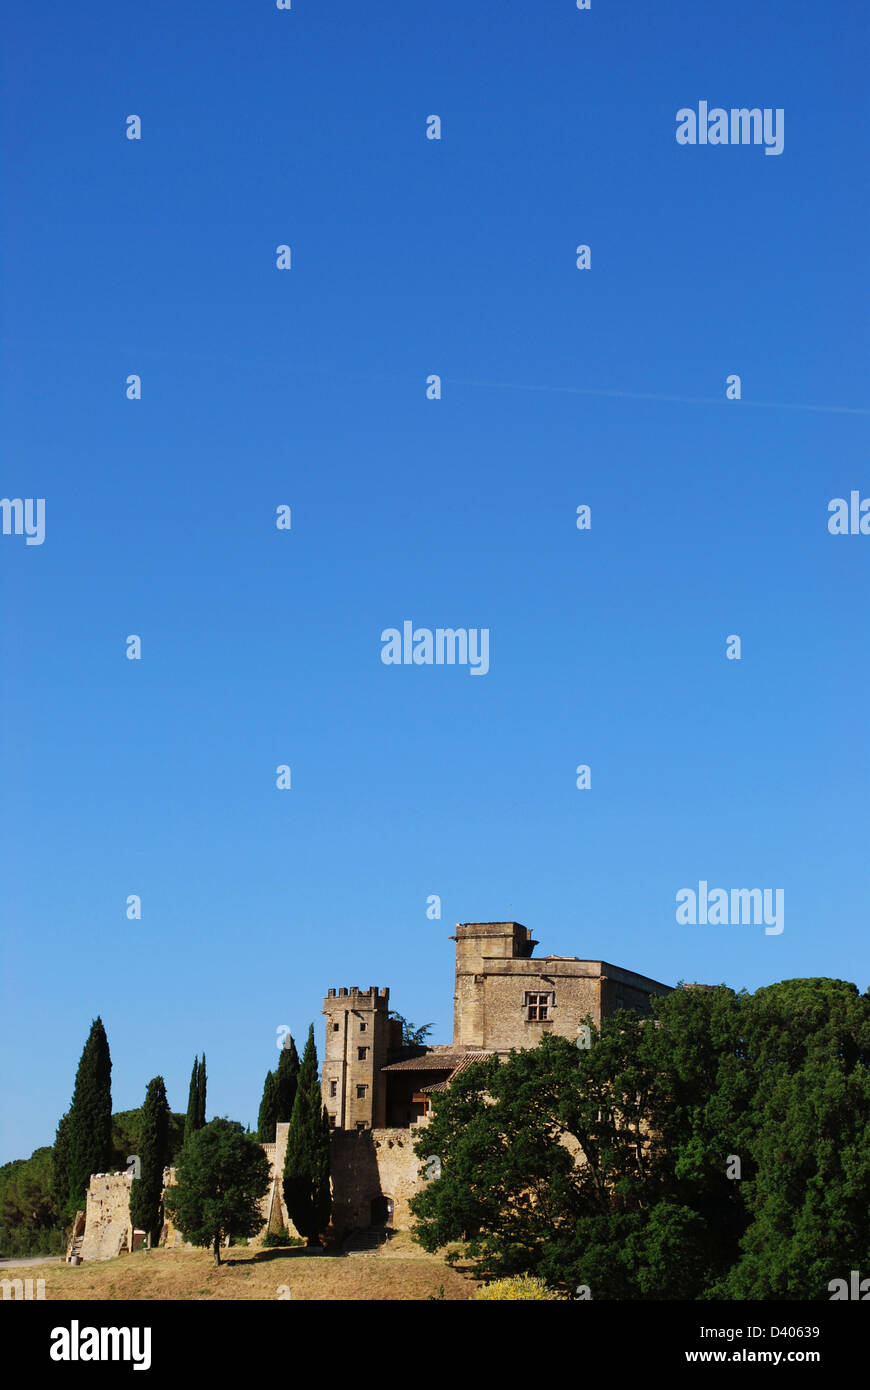 Alte Burg und Hügel-Landschaft in Lourmarin Dorf, Departement Vaucluse, Provence, Frankreich Stockfoto